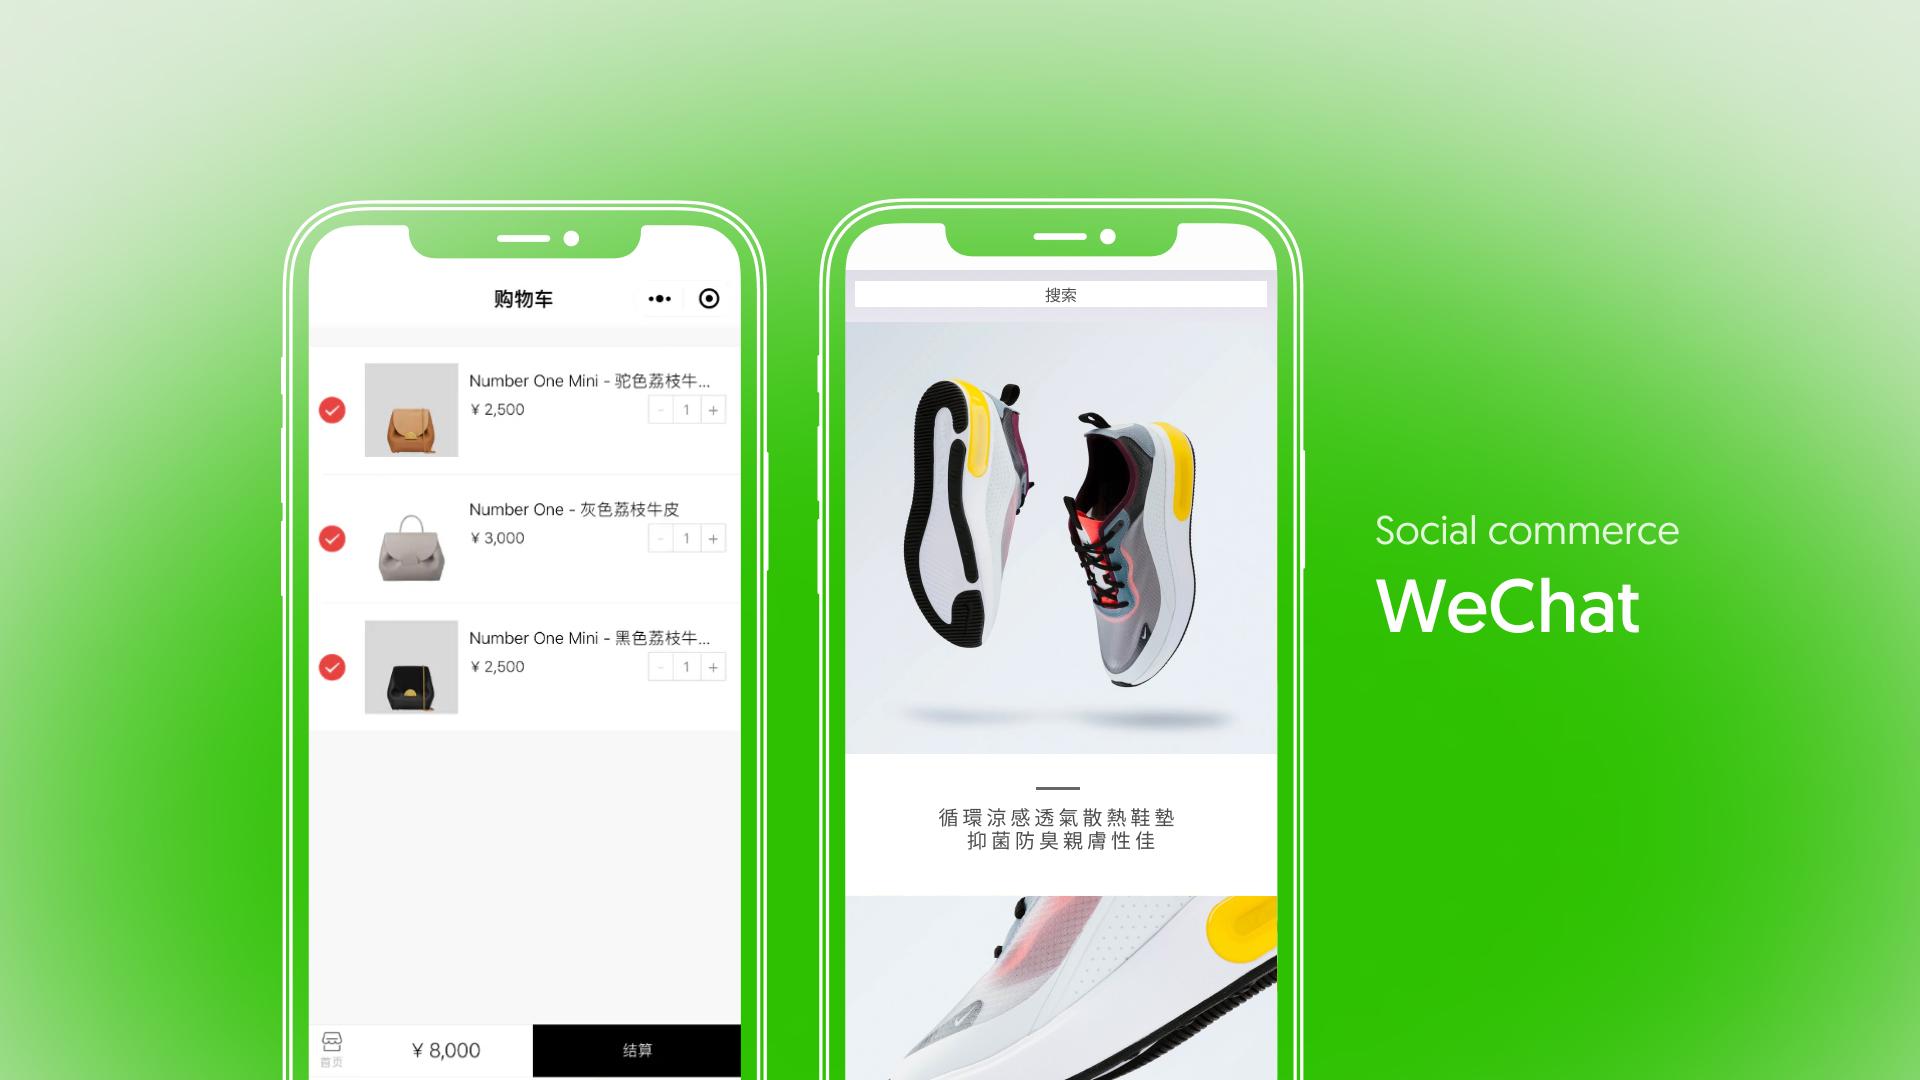 Social commerce – WeChat